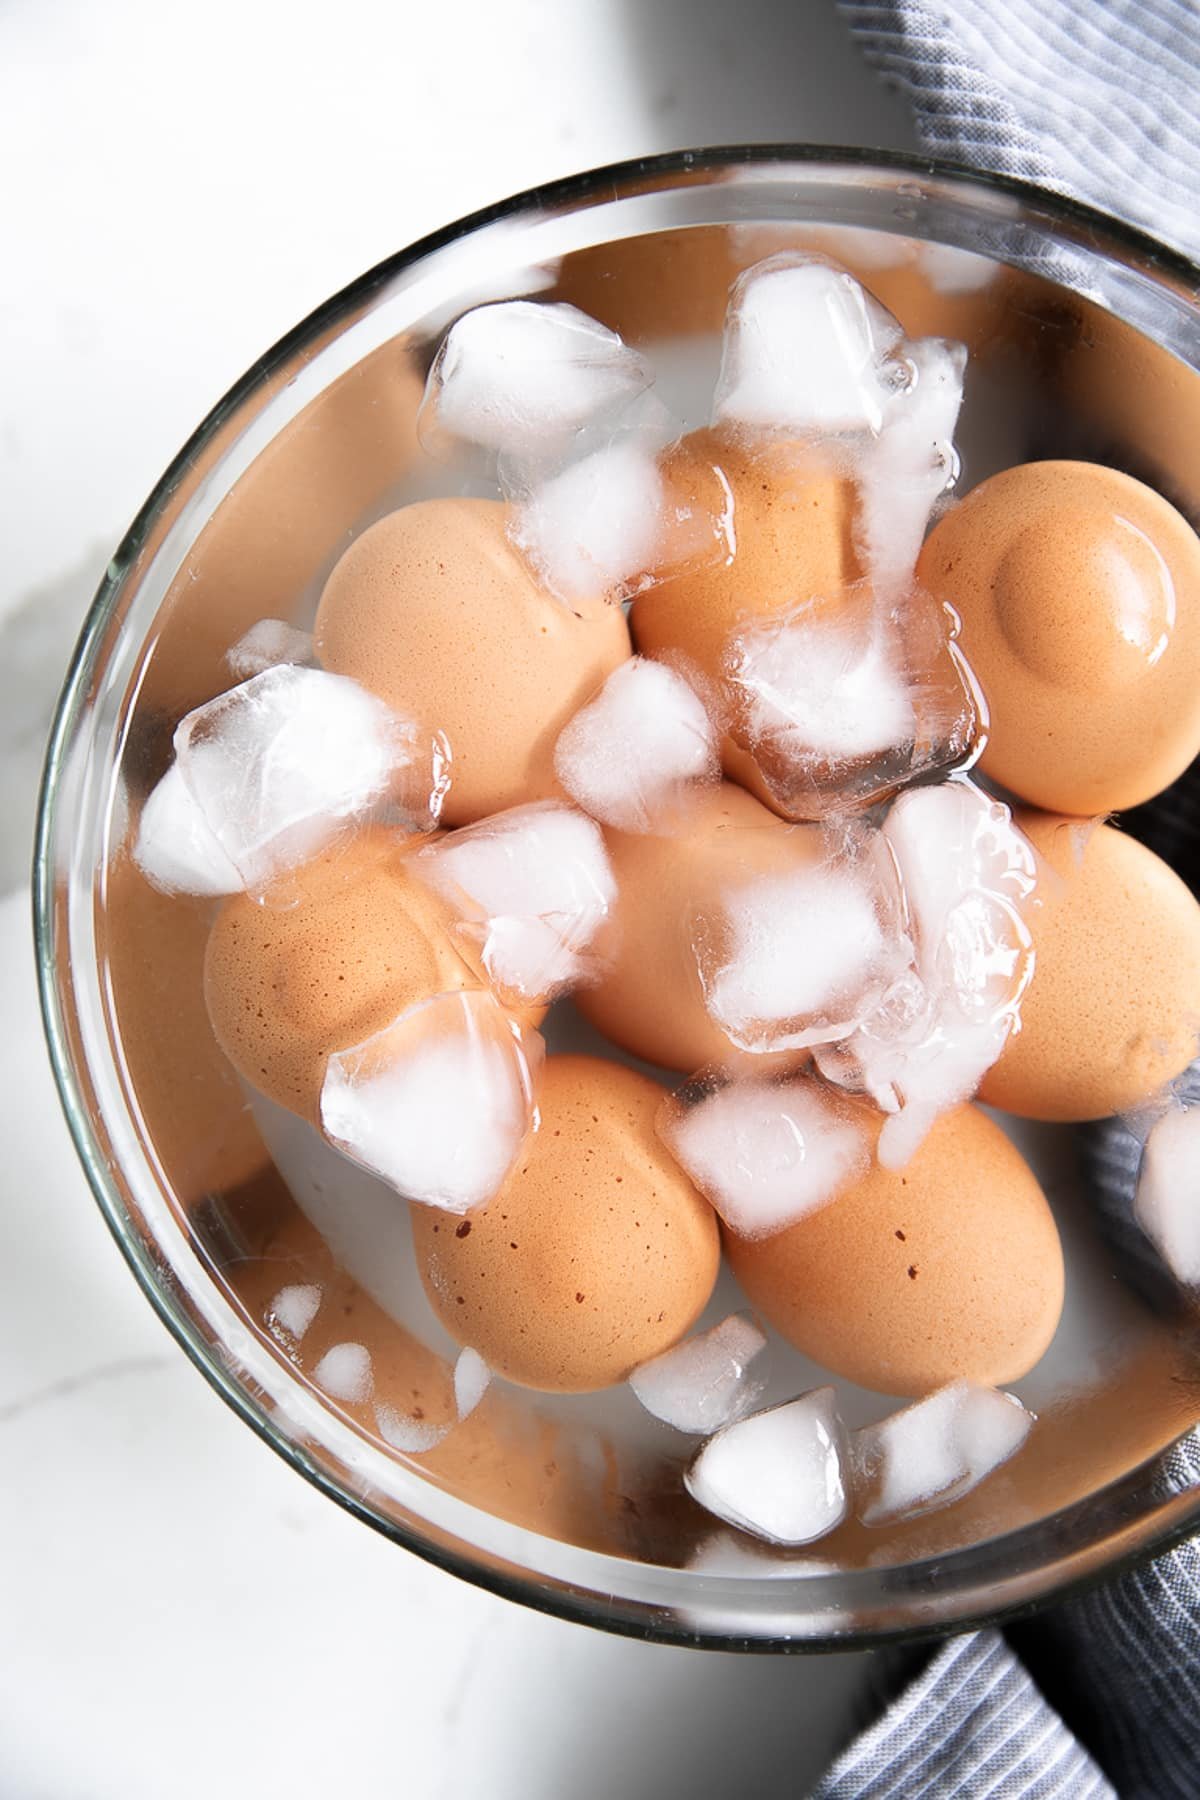 Hard boiled eggs in an ice bath.